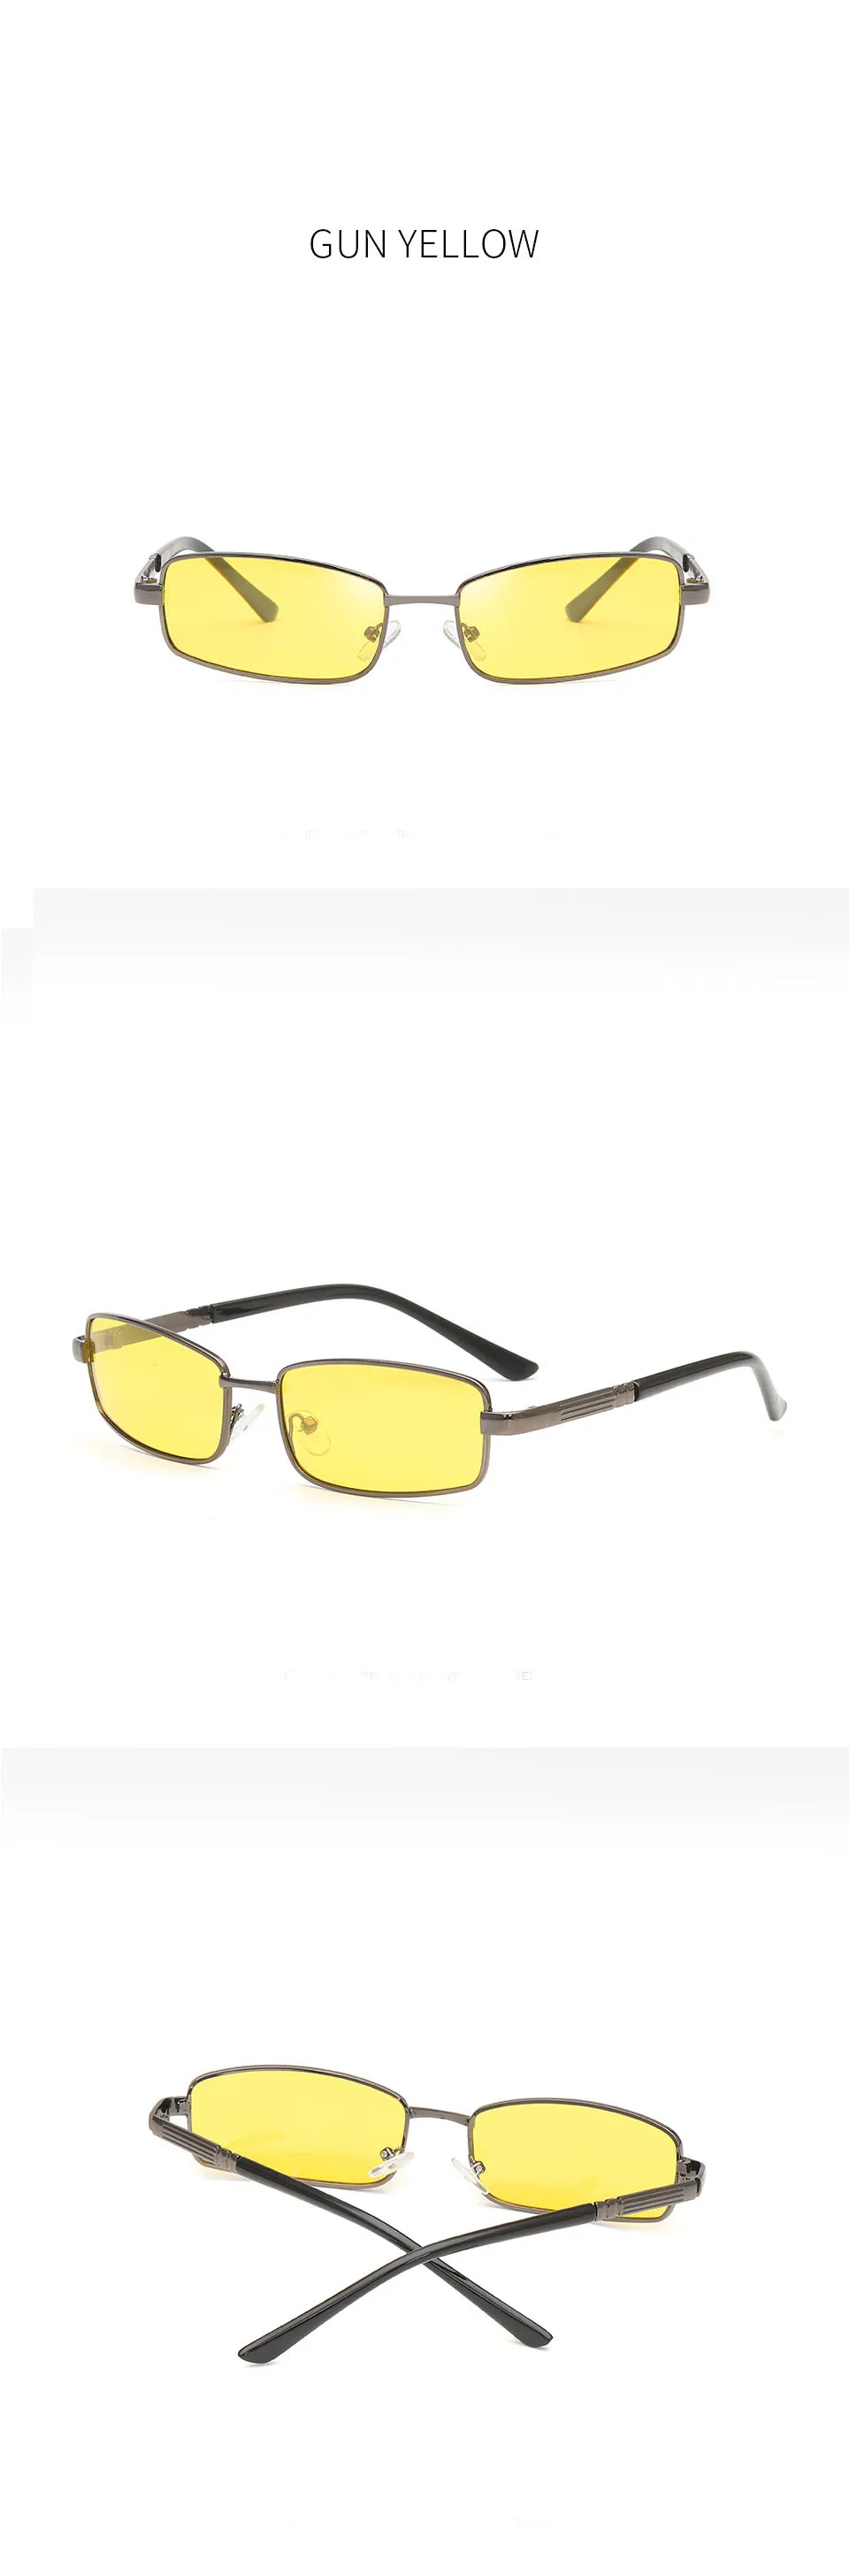 Новое поступление мужские поляризованные очки металлические рыболовные очки ночного видения модный водитель солнцезащитные очки